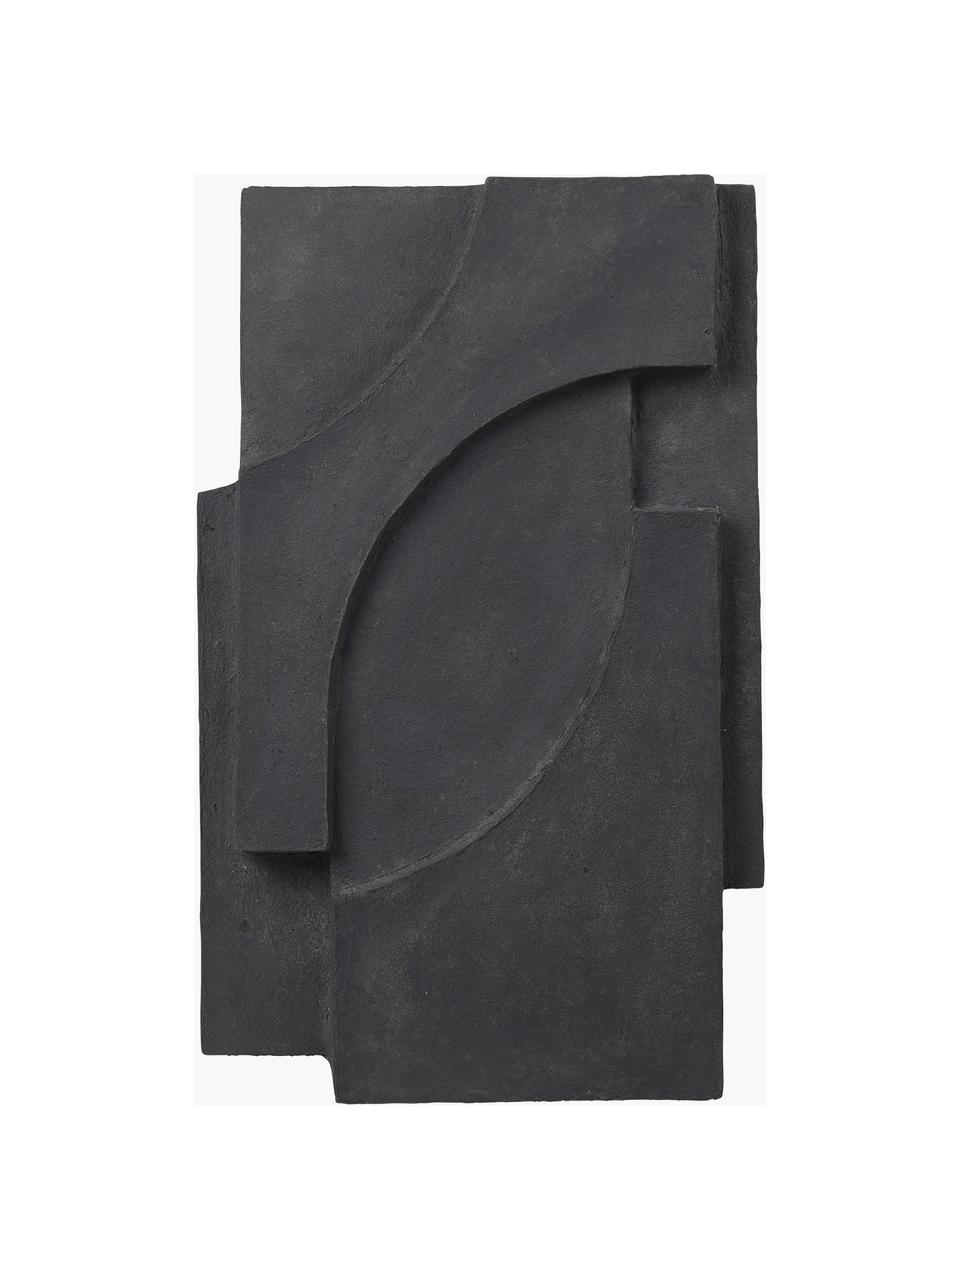 Dekoracja ścienna Serif, Pulpa bawełniana, Czarny, S 38 x W 42 cm